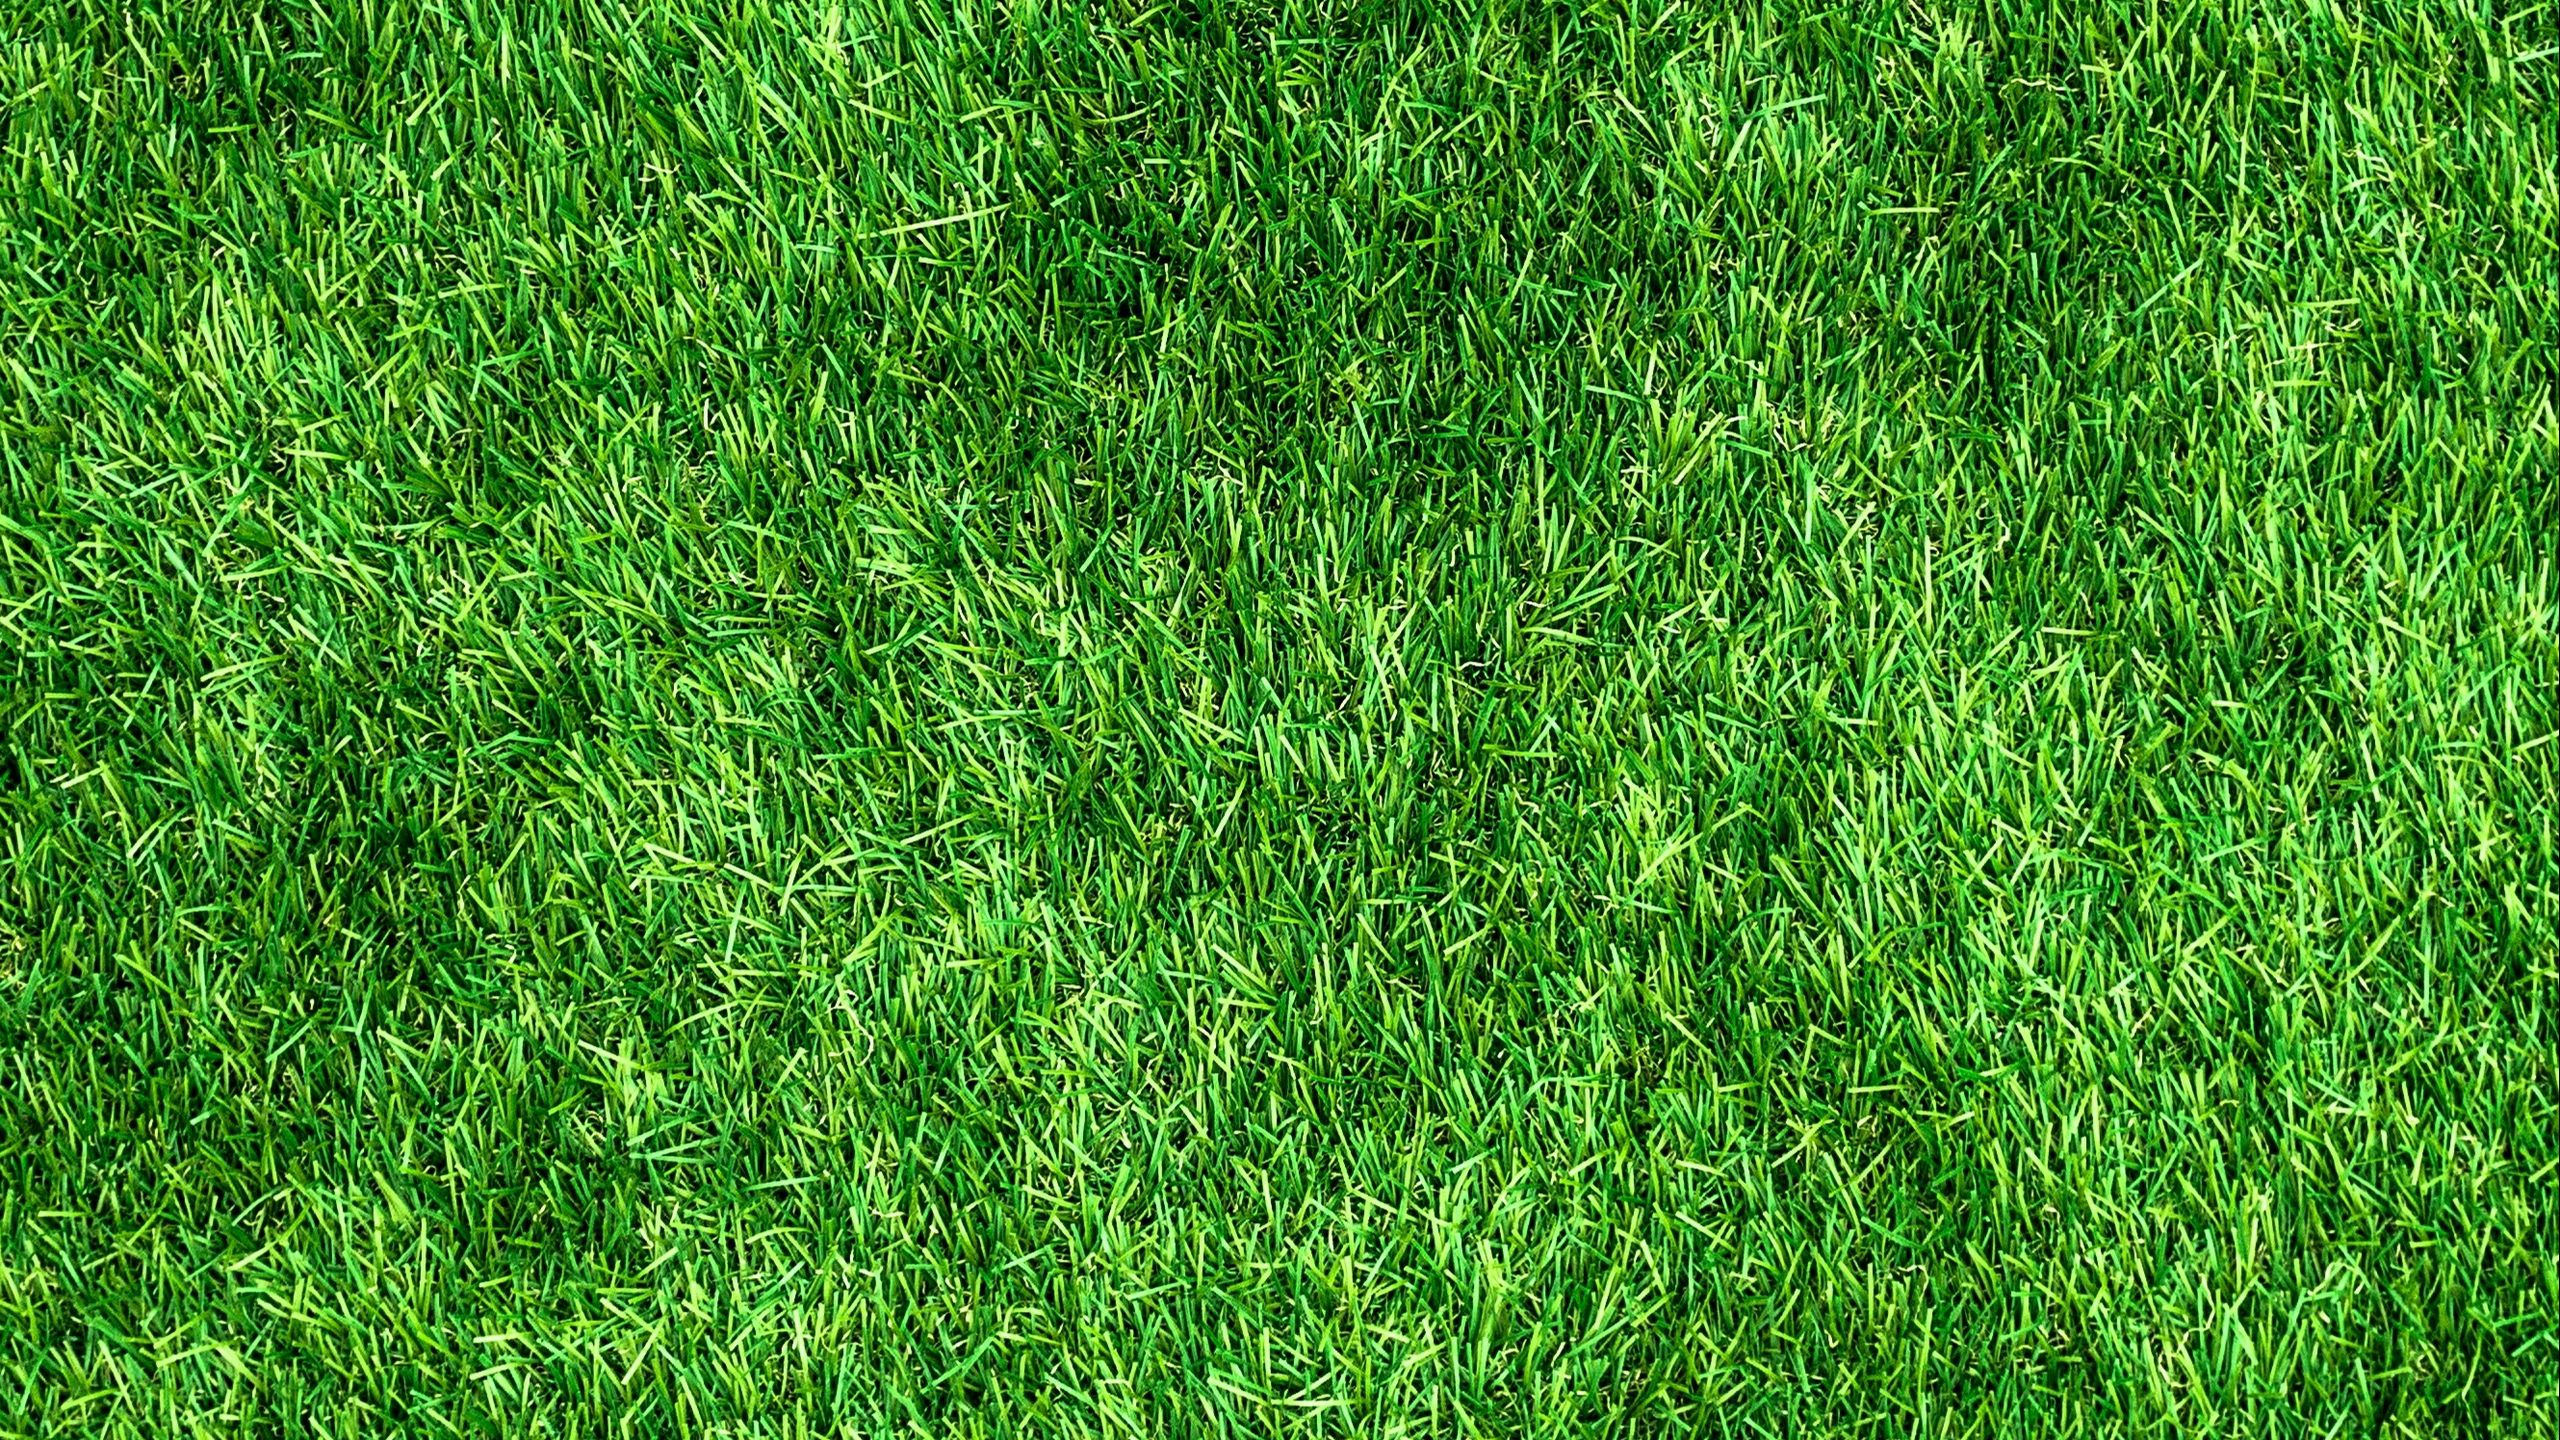 Dành cho những ai yêu thích thiên nhiên hình nền cỏ dày, mặt nền màu xanh lá cây 2560x1440 sẽ làm hài lòng bạn. Thỏa sức mơ mộng và đắm chìm vào không gian xanh mát với hình nền vô cùng sống động, mang đến cho bạn cảm giác sảng khoái và thư giãn sau những giờ làm việc căng thẳng.